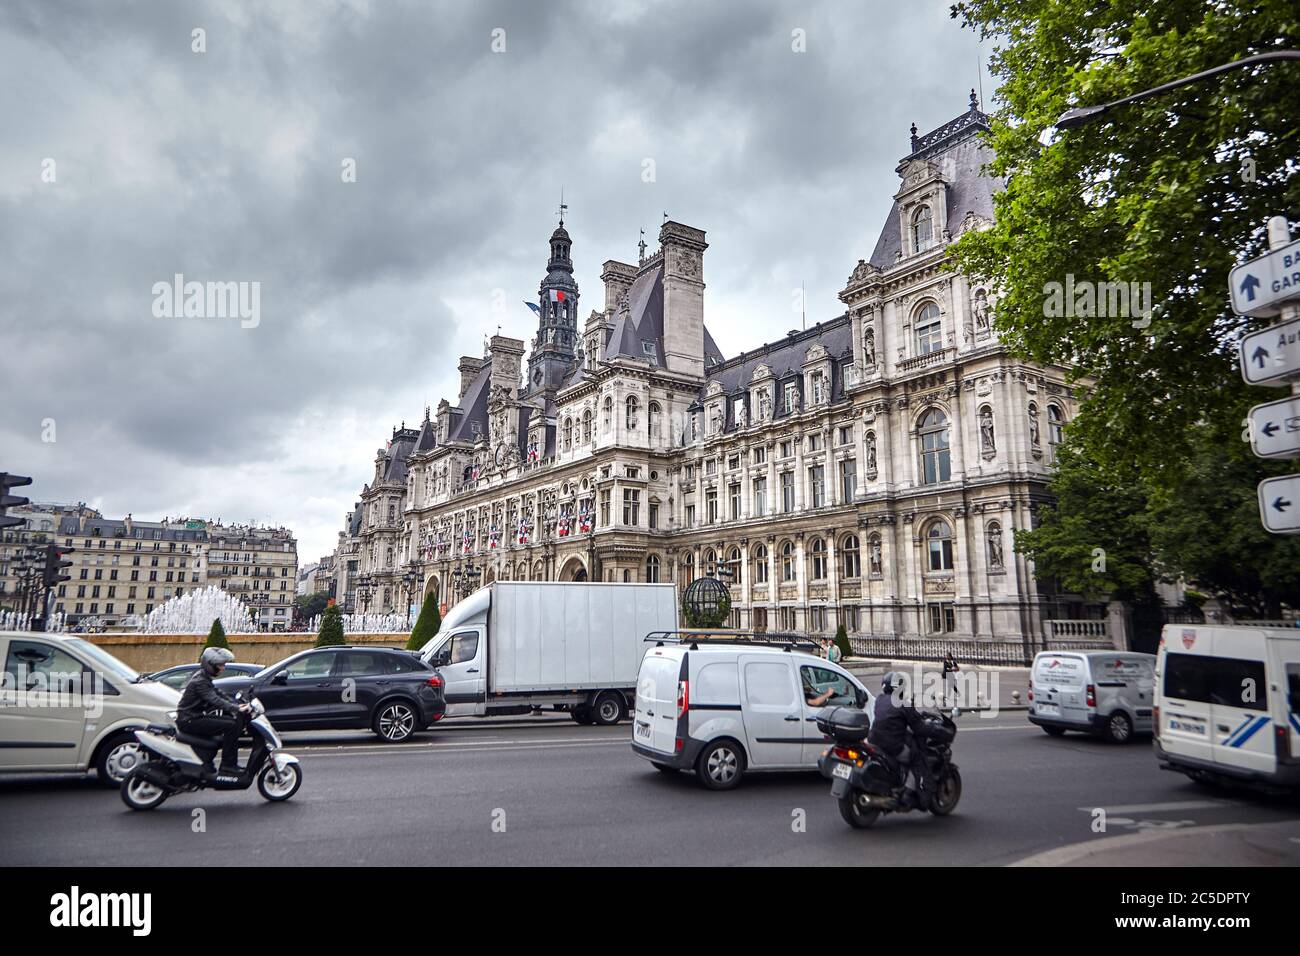 Paris, France - 18 juin 2015 : façade de l'Hôtel de ville de Paris (Hôtel de ville). Voitures dans la rue Banque D'Images